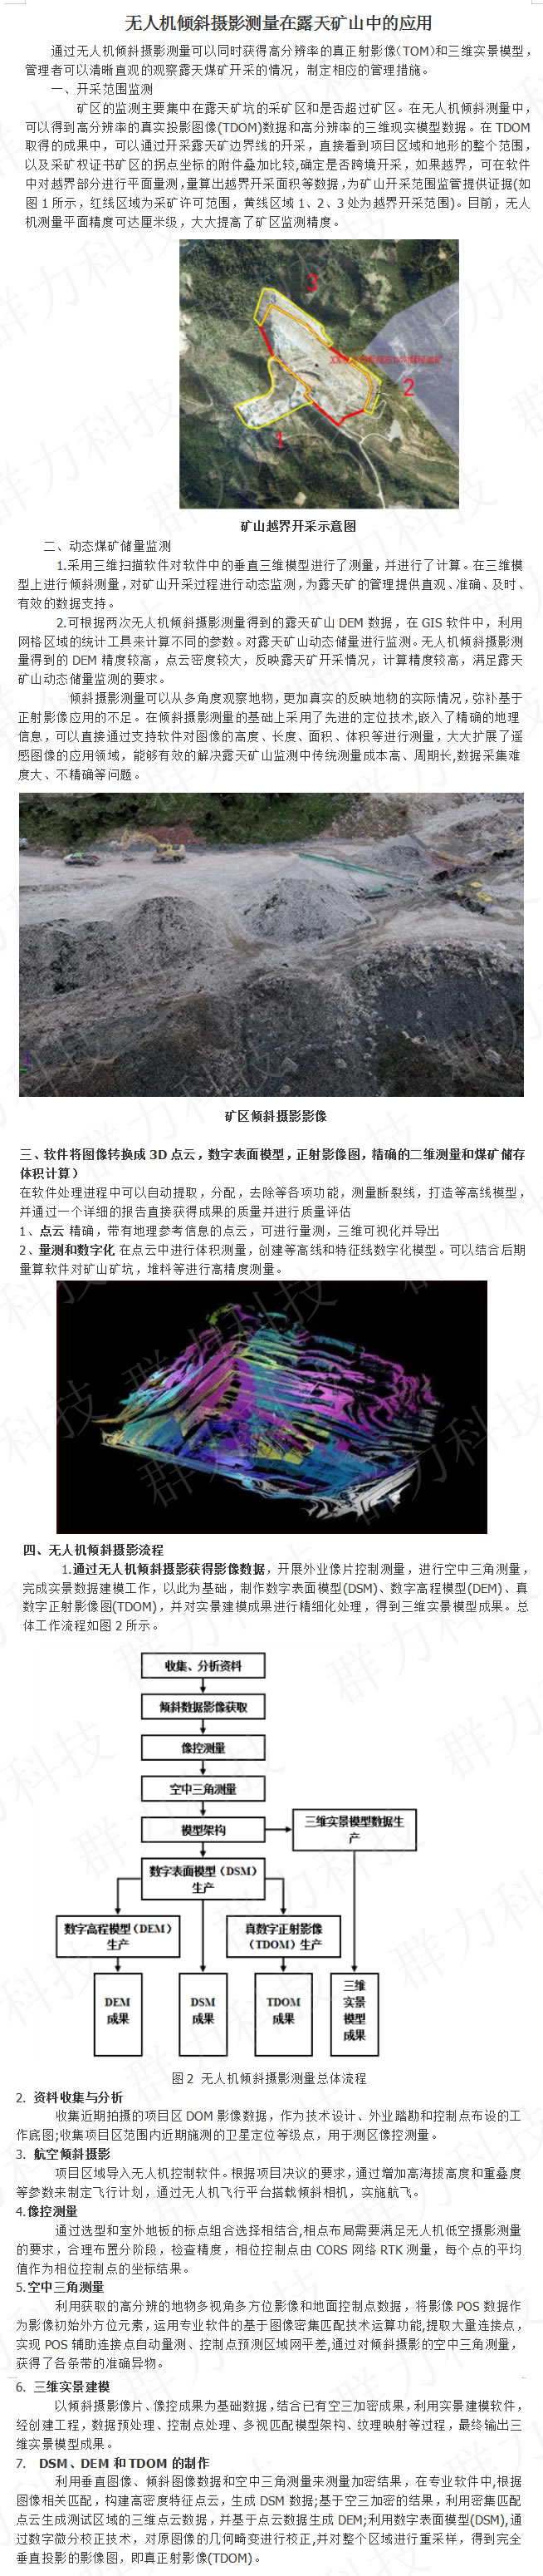 兴宁区群力无人机倾斜摄影测量在露天矿山中的应用